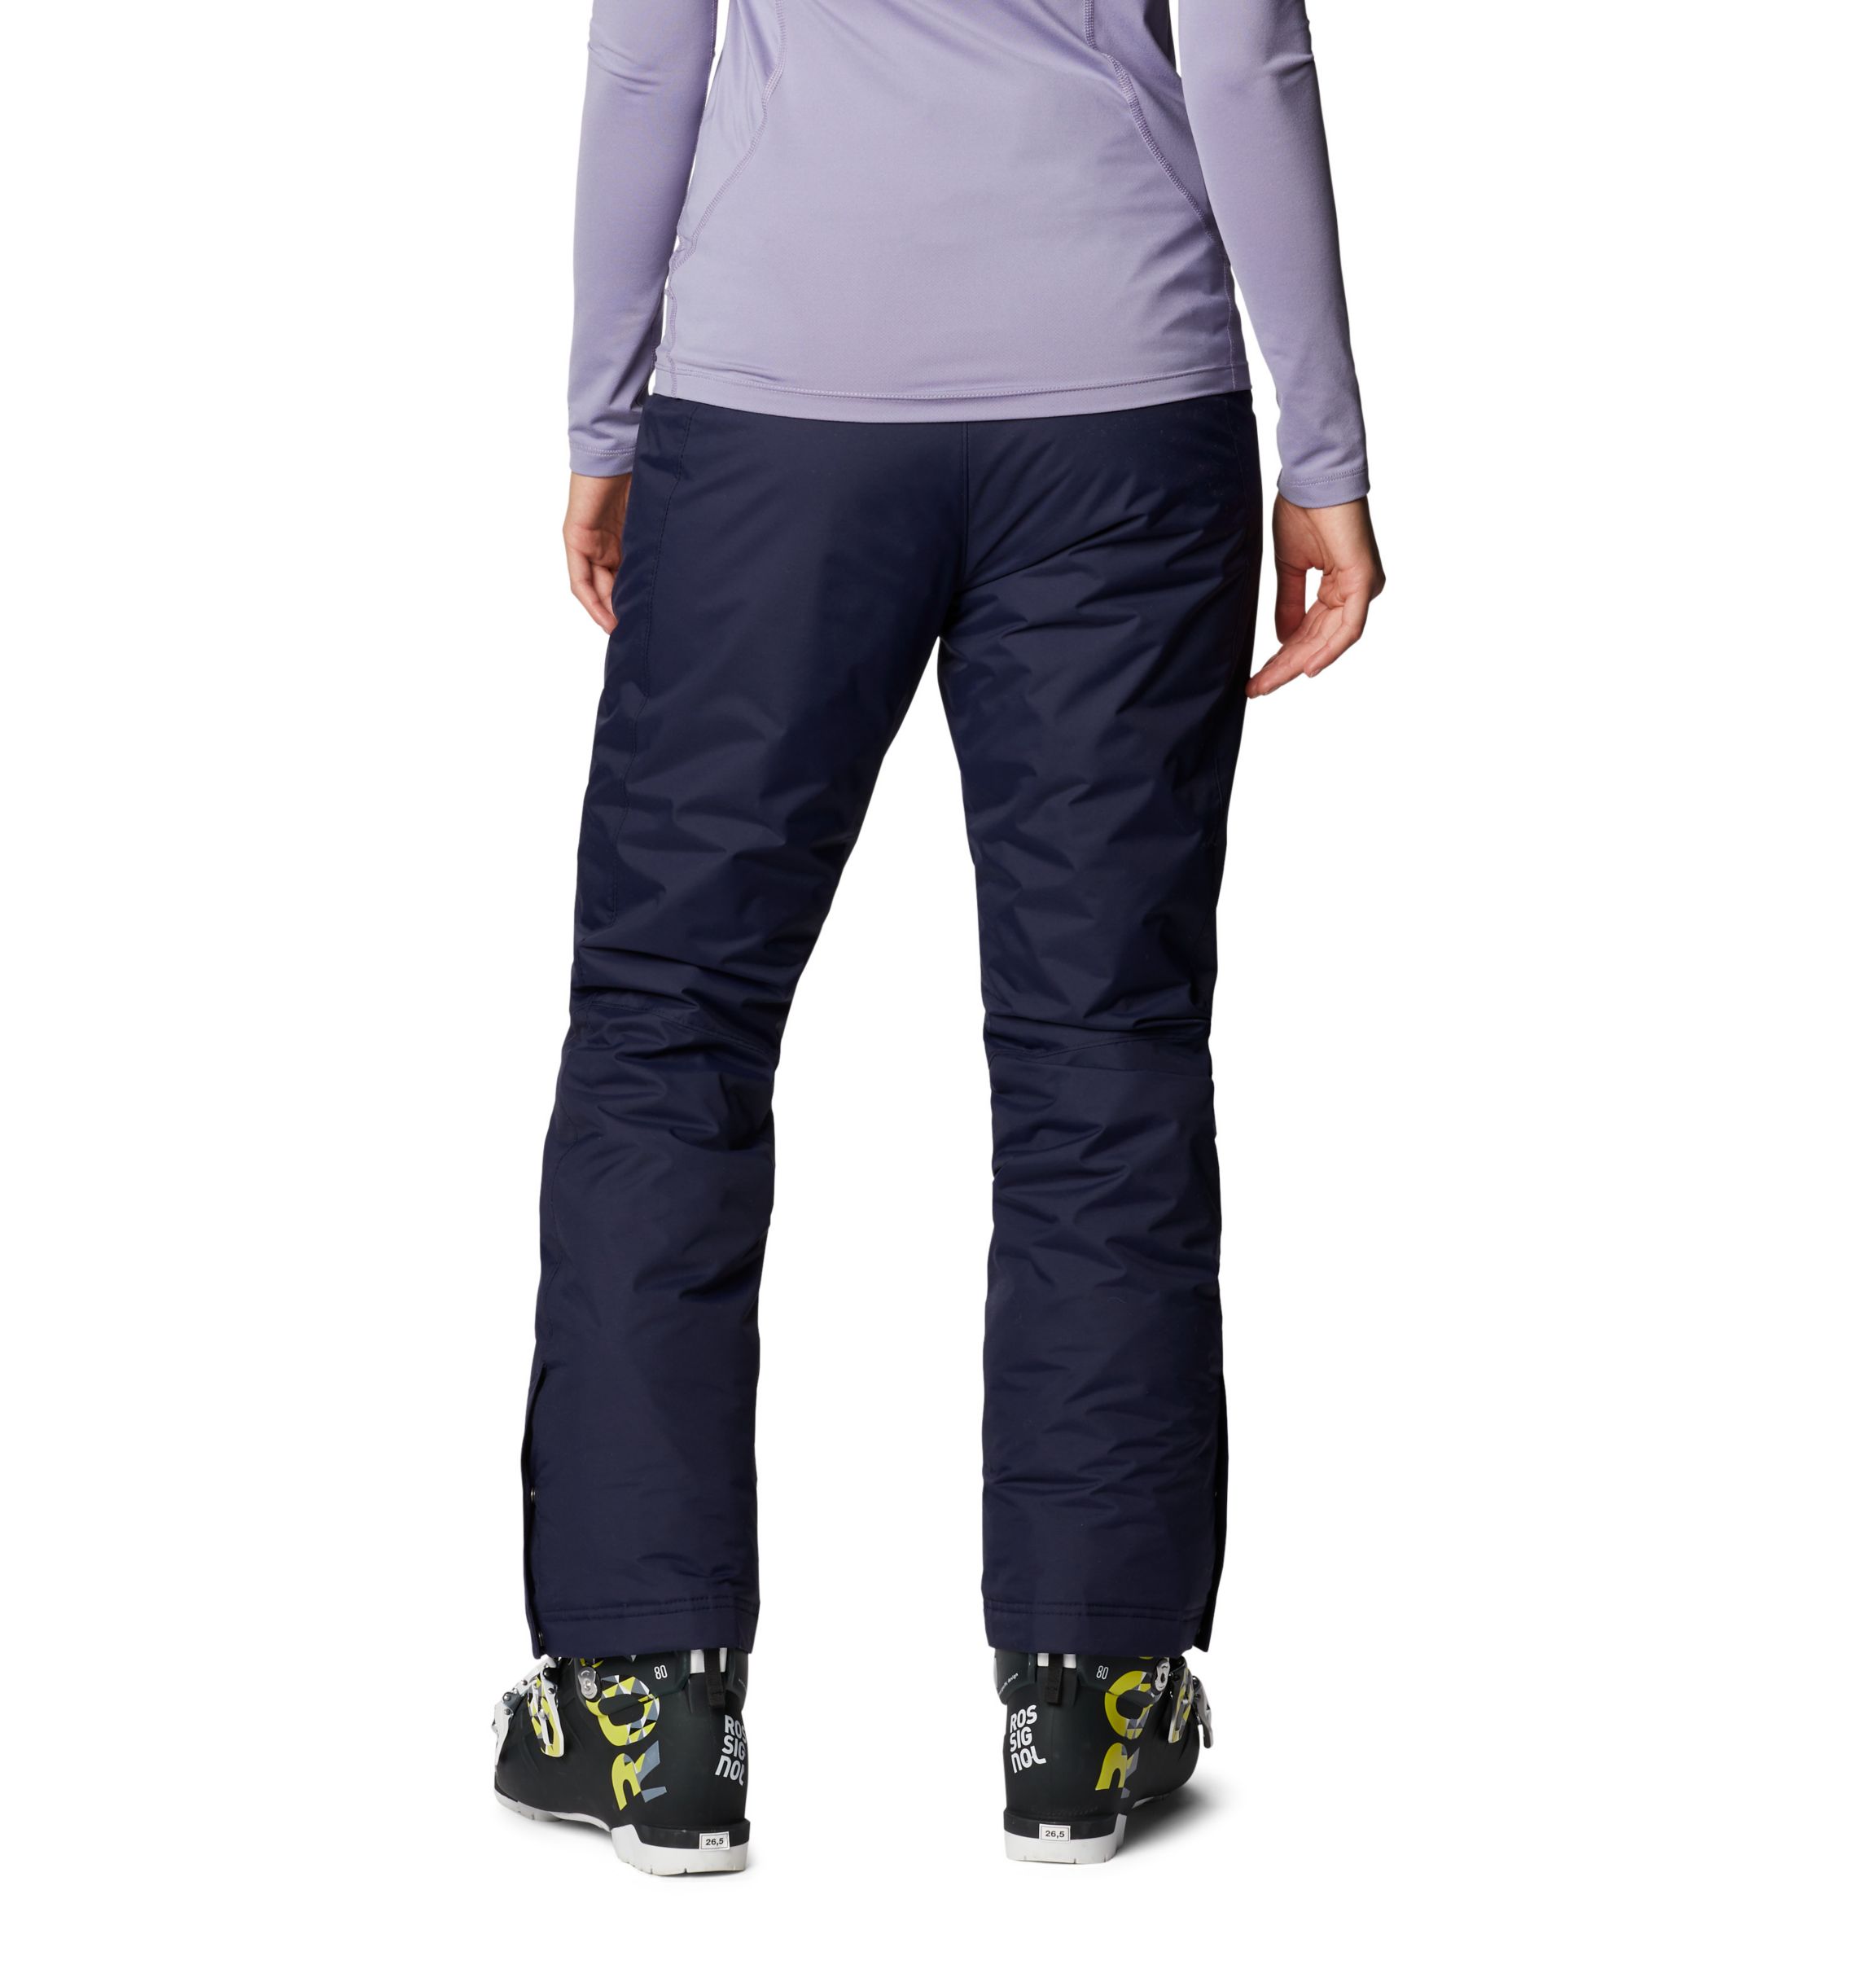 Pantalón de esquí - Mujer - Columbia Modern Mountain 2.0 - 1519441010